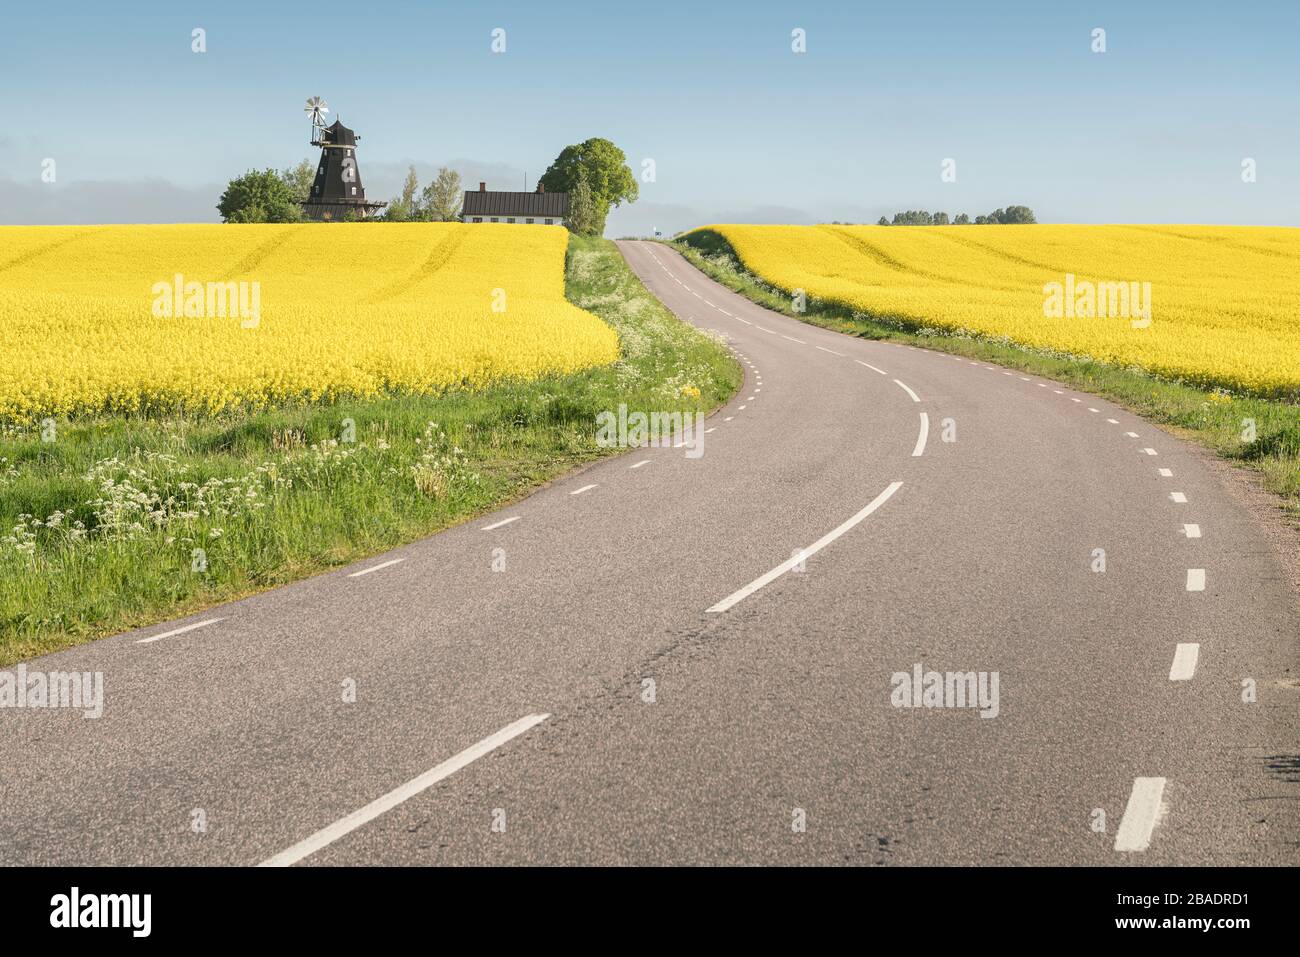 Landstraße, die zu einer alten Windmühle auf einem Hügel in der Agrarlandschaft mit gelben Rapsfeldern bei Tomelilla, Skane, Schweden, Skandinavien führt. Stockfoto